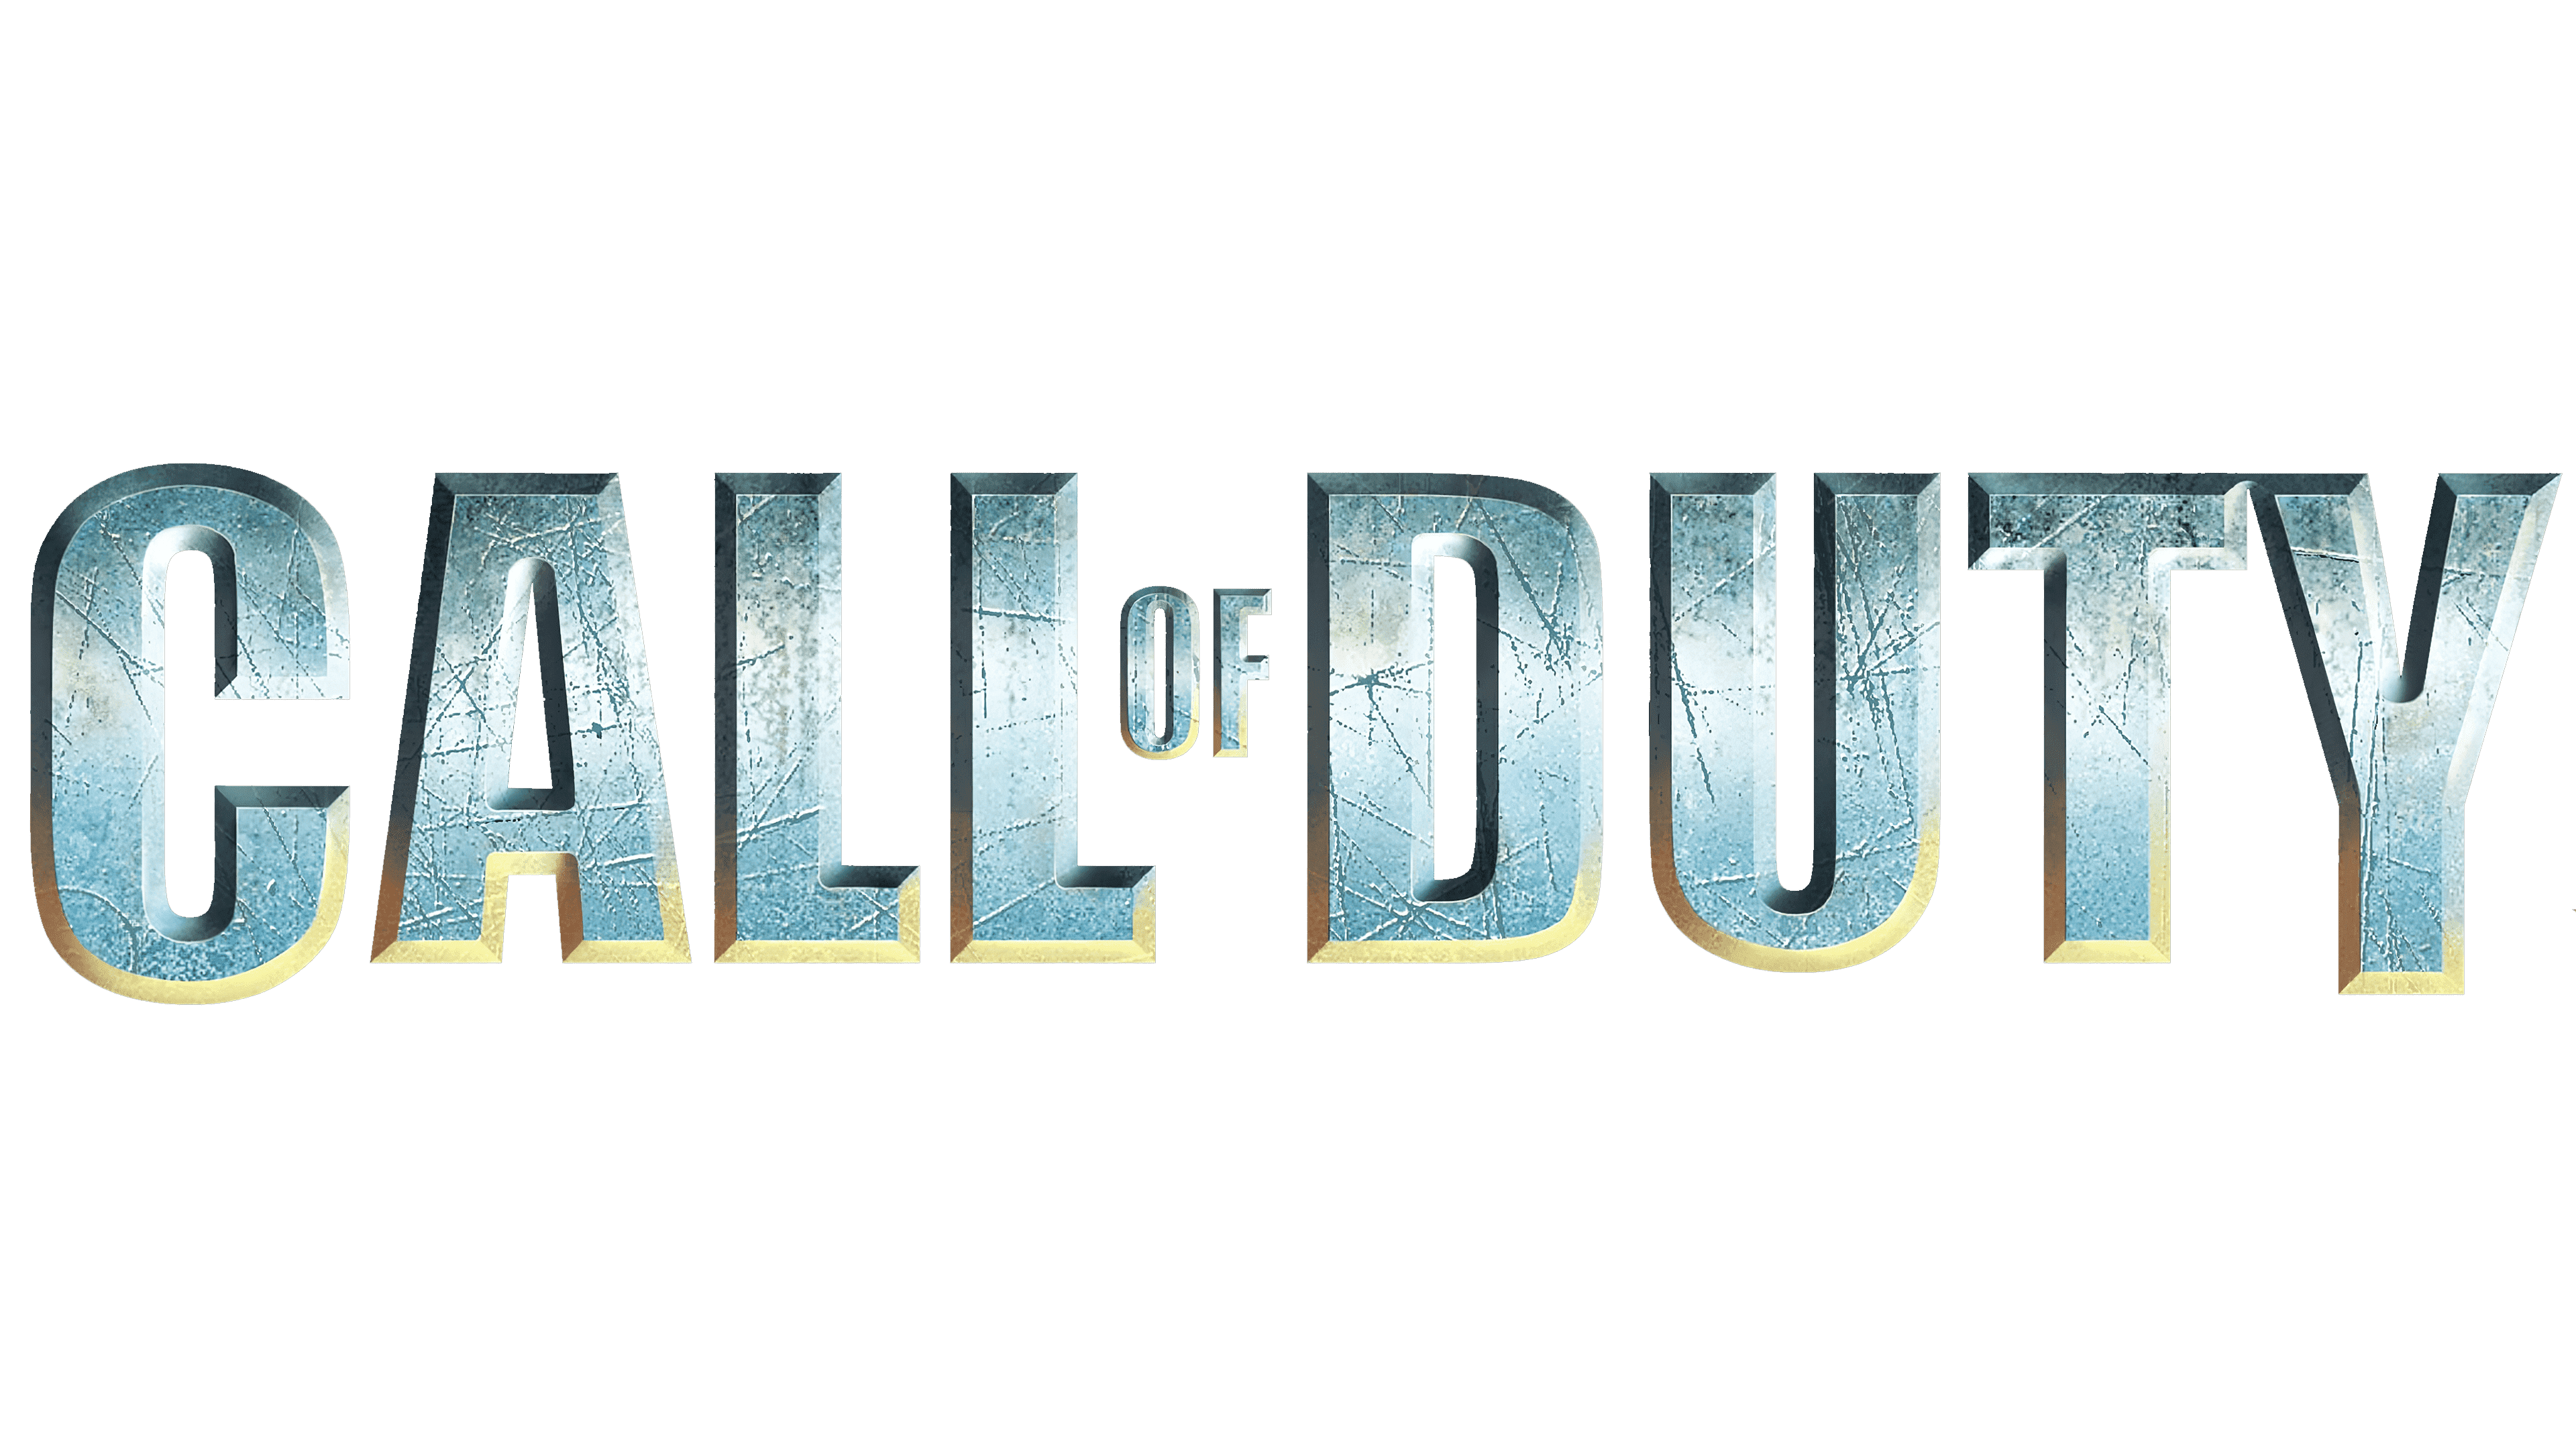 Call Of Duty Modern Warfare Logo